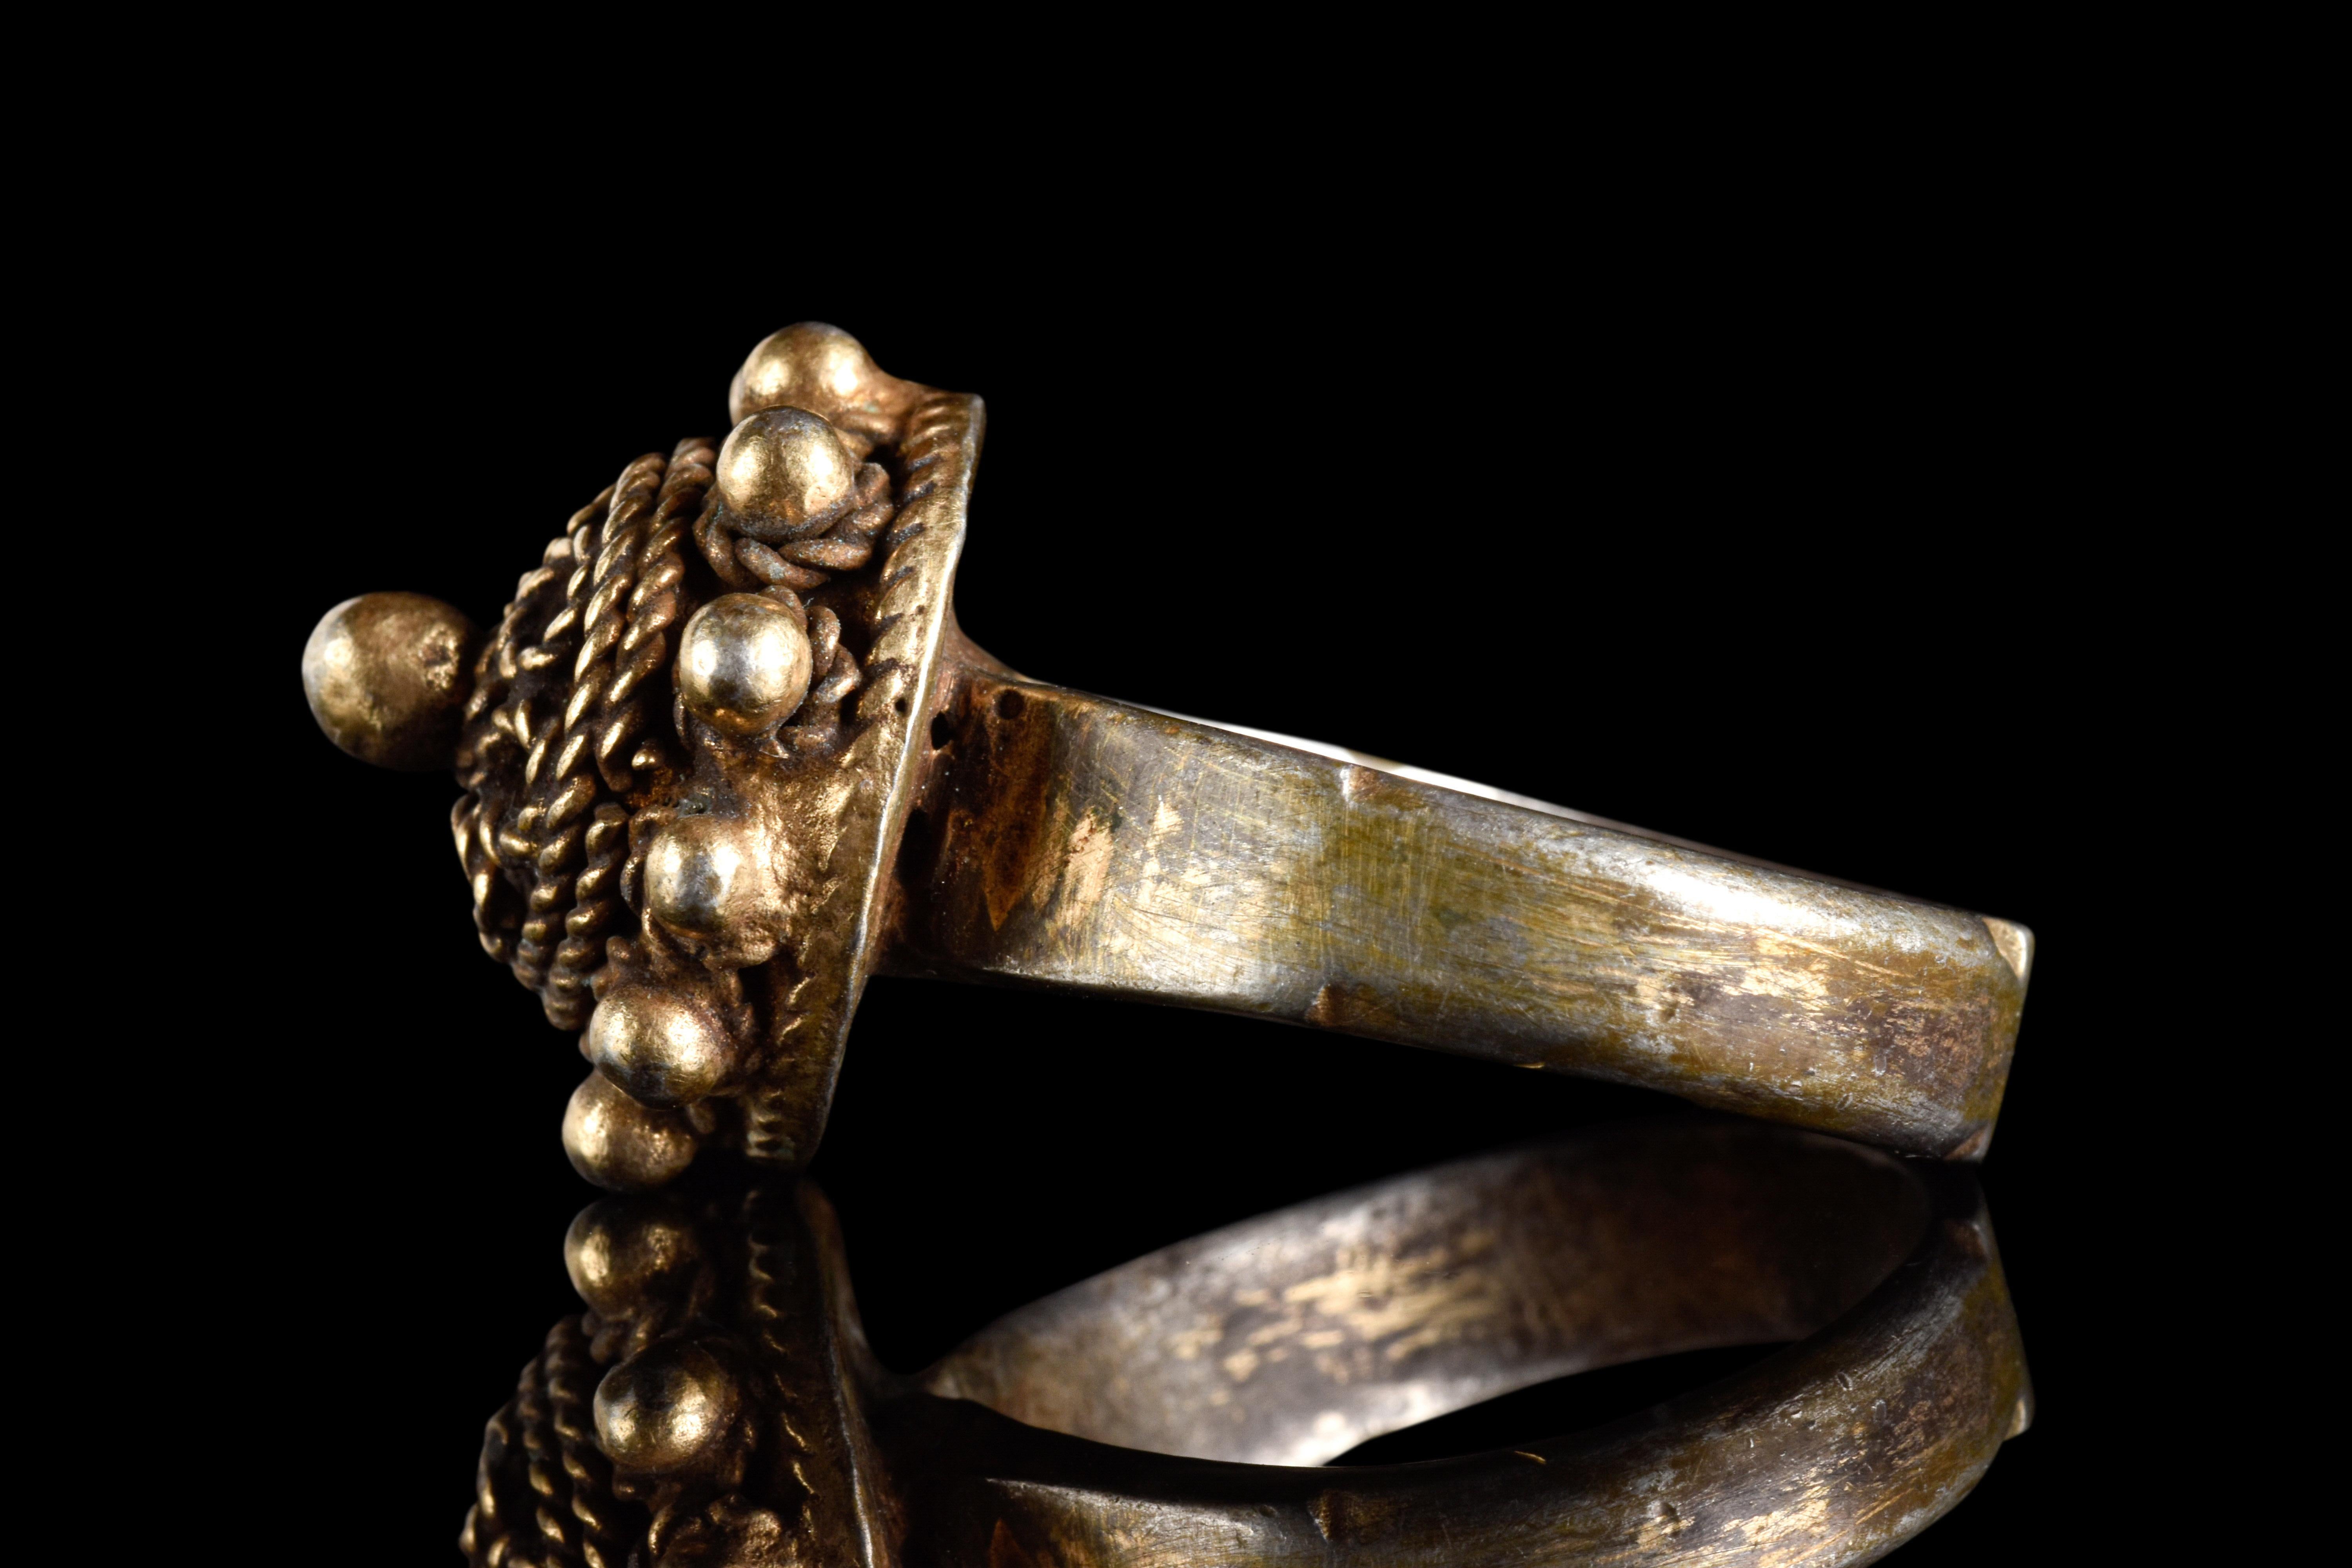 Ein silberner Fingerring, der die Exzellenz der osmanischen Handwerkskunst zeigt. Der flache Reif bleibt unverziert, während die kuppelförmige Lünette mit erhabenen Seilrändern und feinem Granulat versehen ist, die für Textur sorgen. 

Größe: